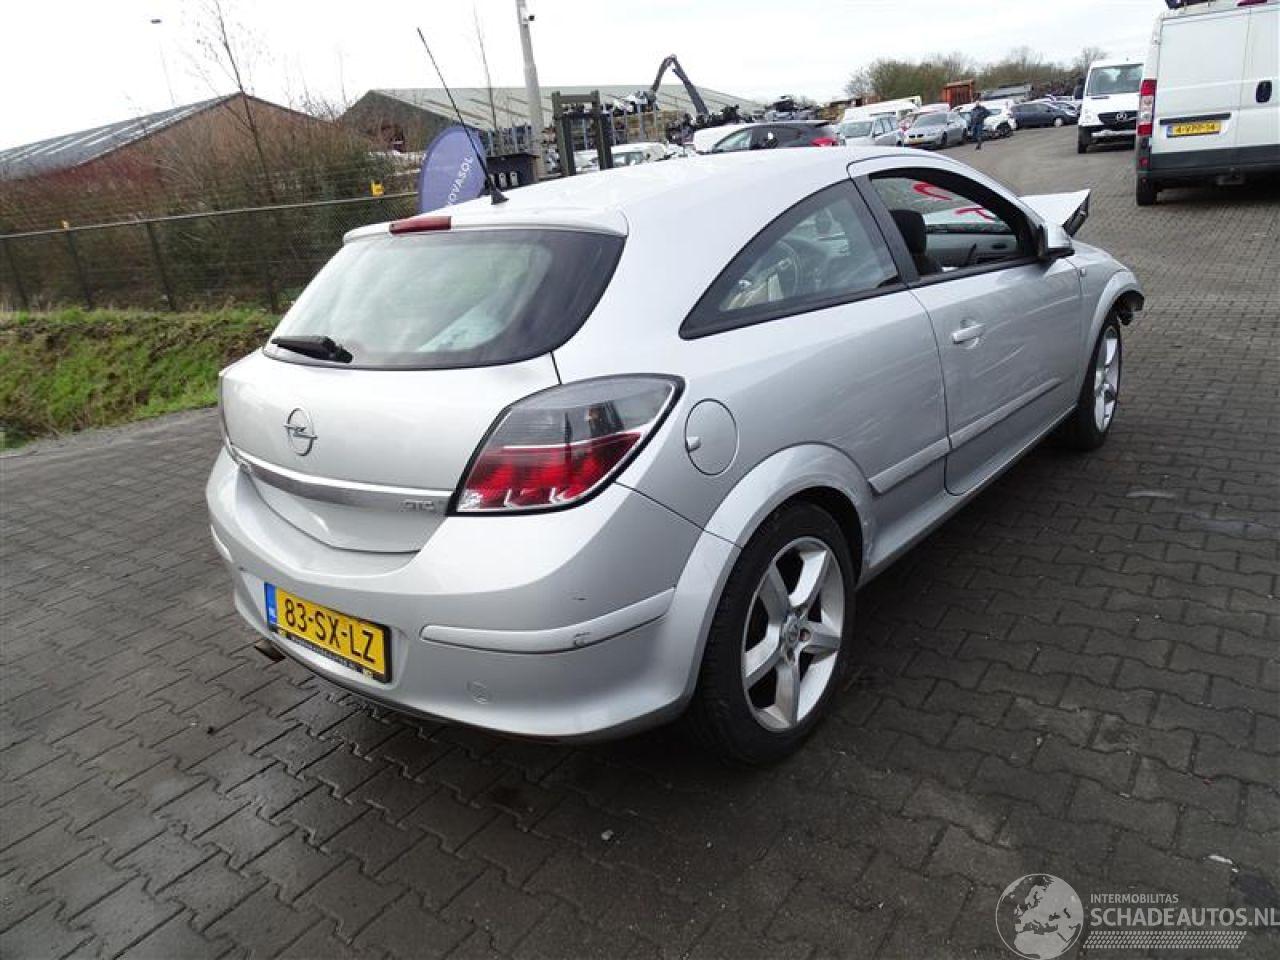 Opel Astra GTC 1.8 16v